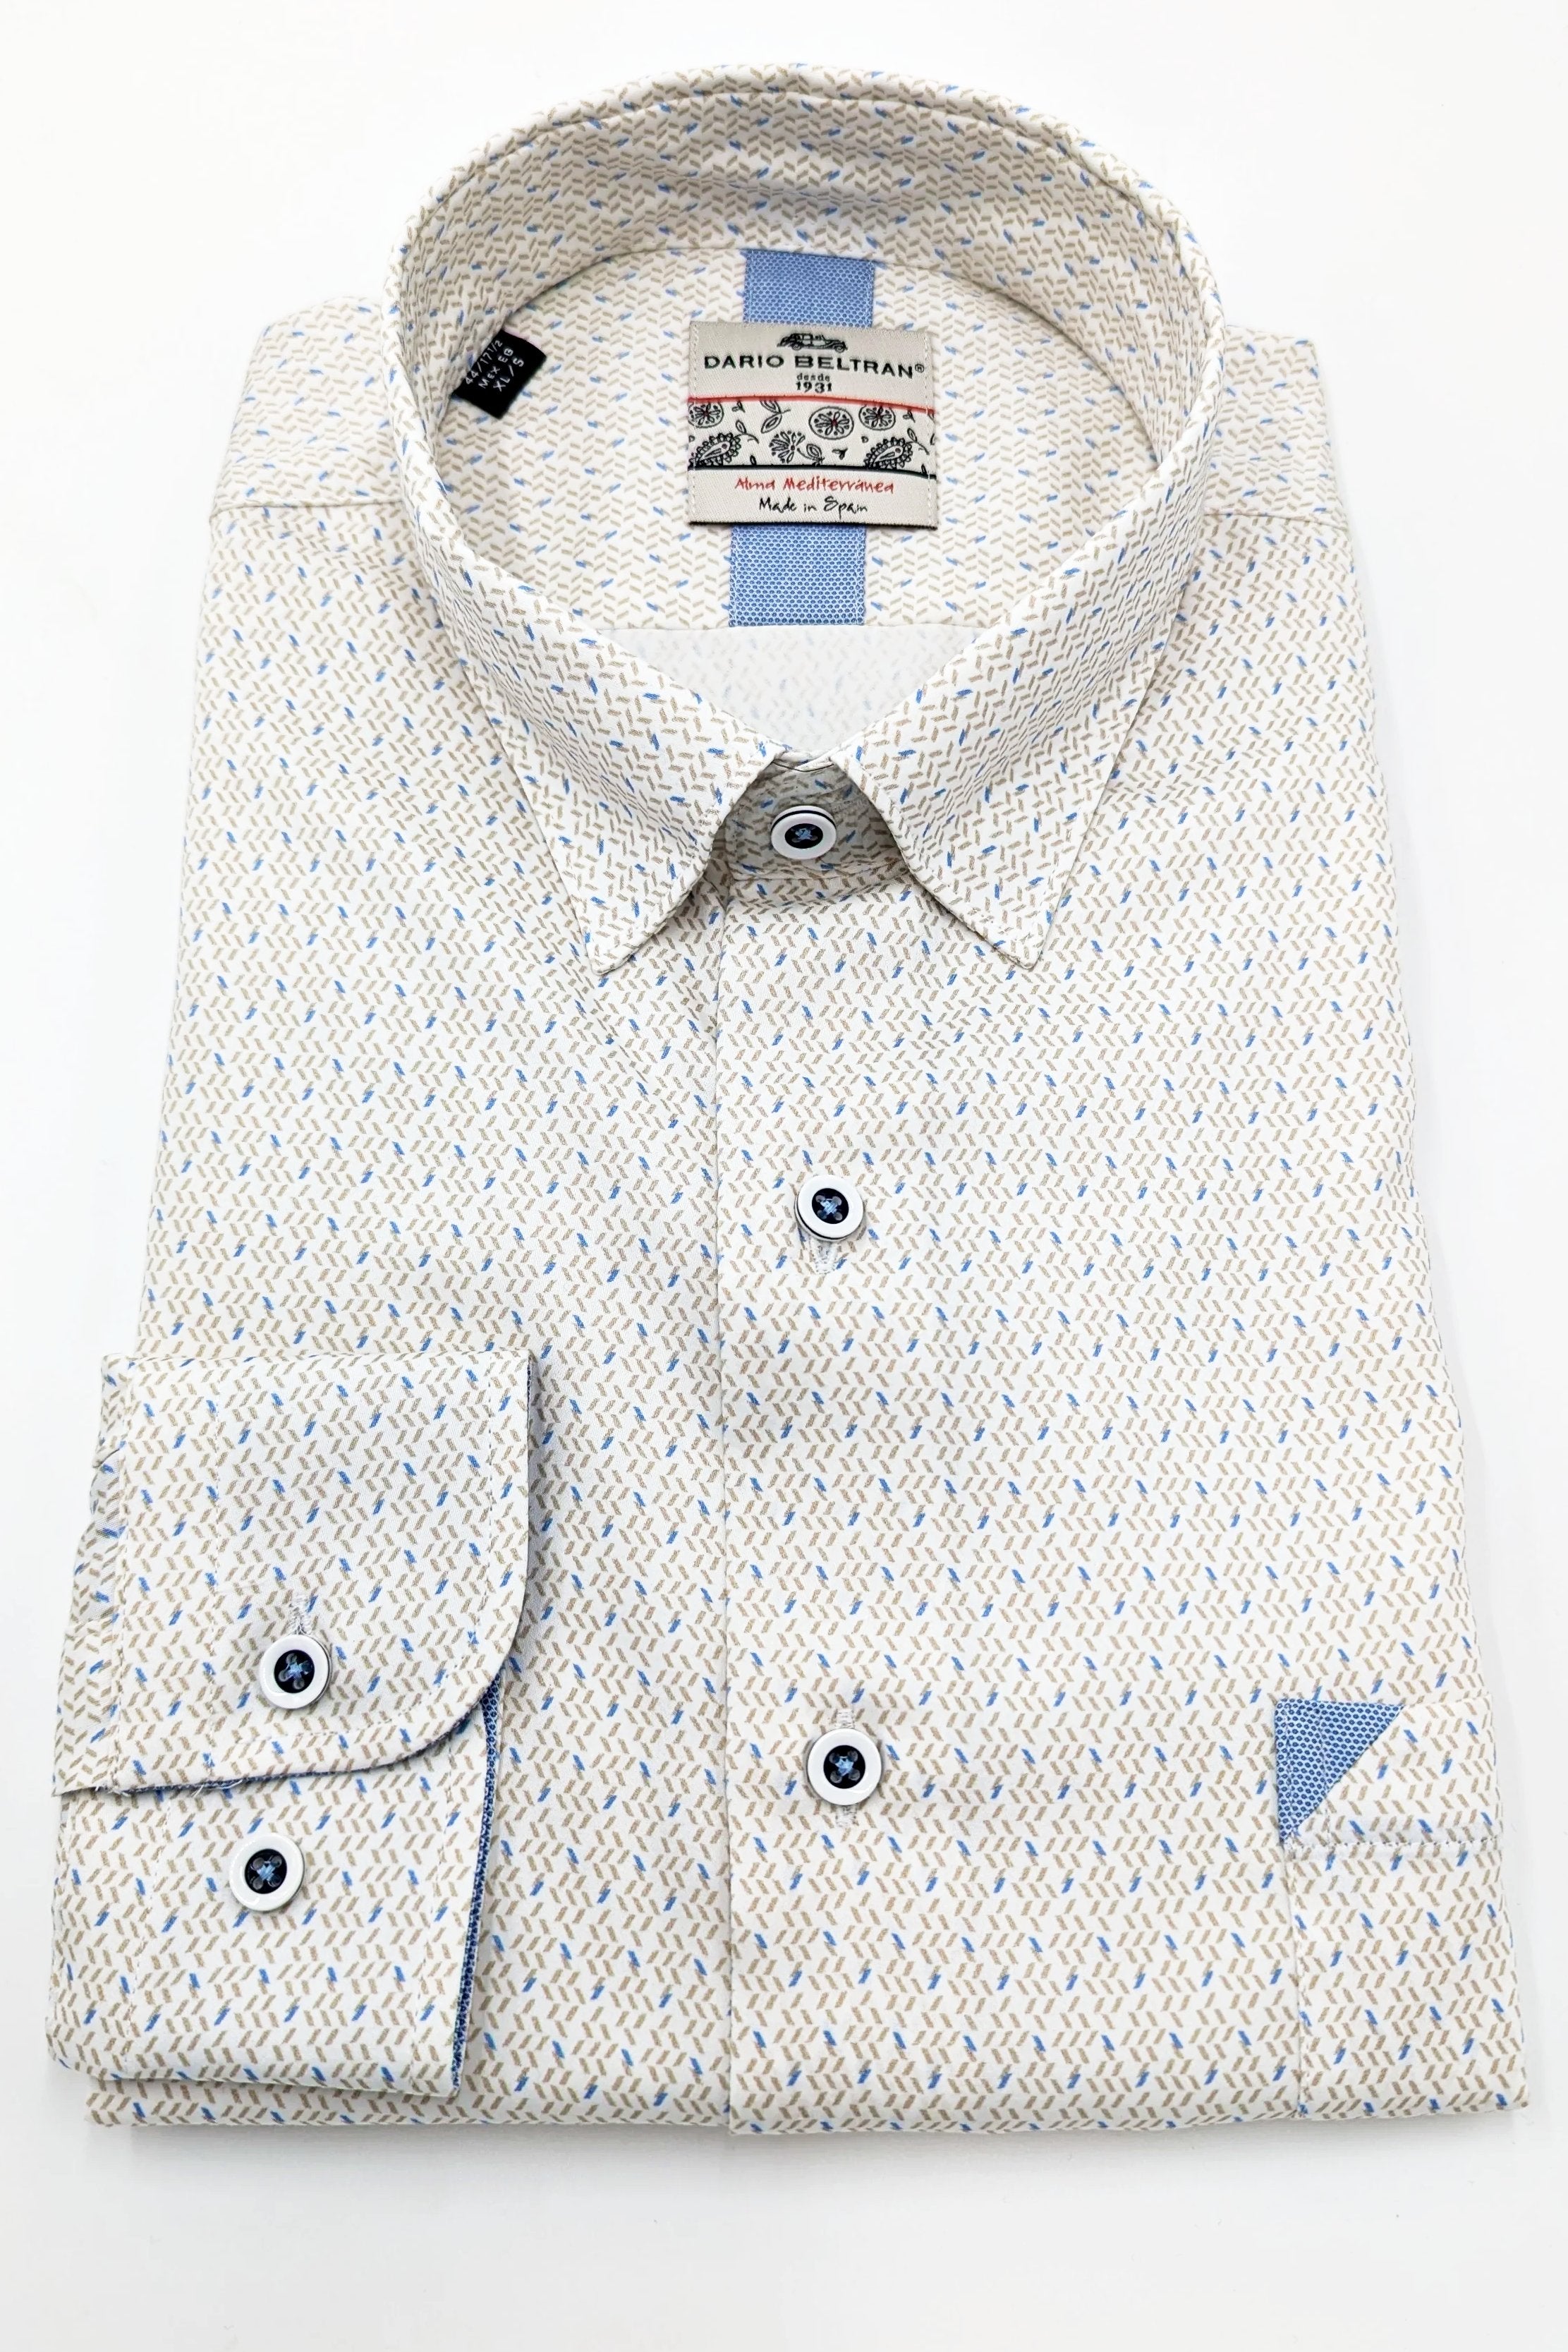 Ainsa Button Under Tan Blue Pattern Long Sleeve Shirt